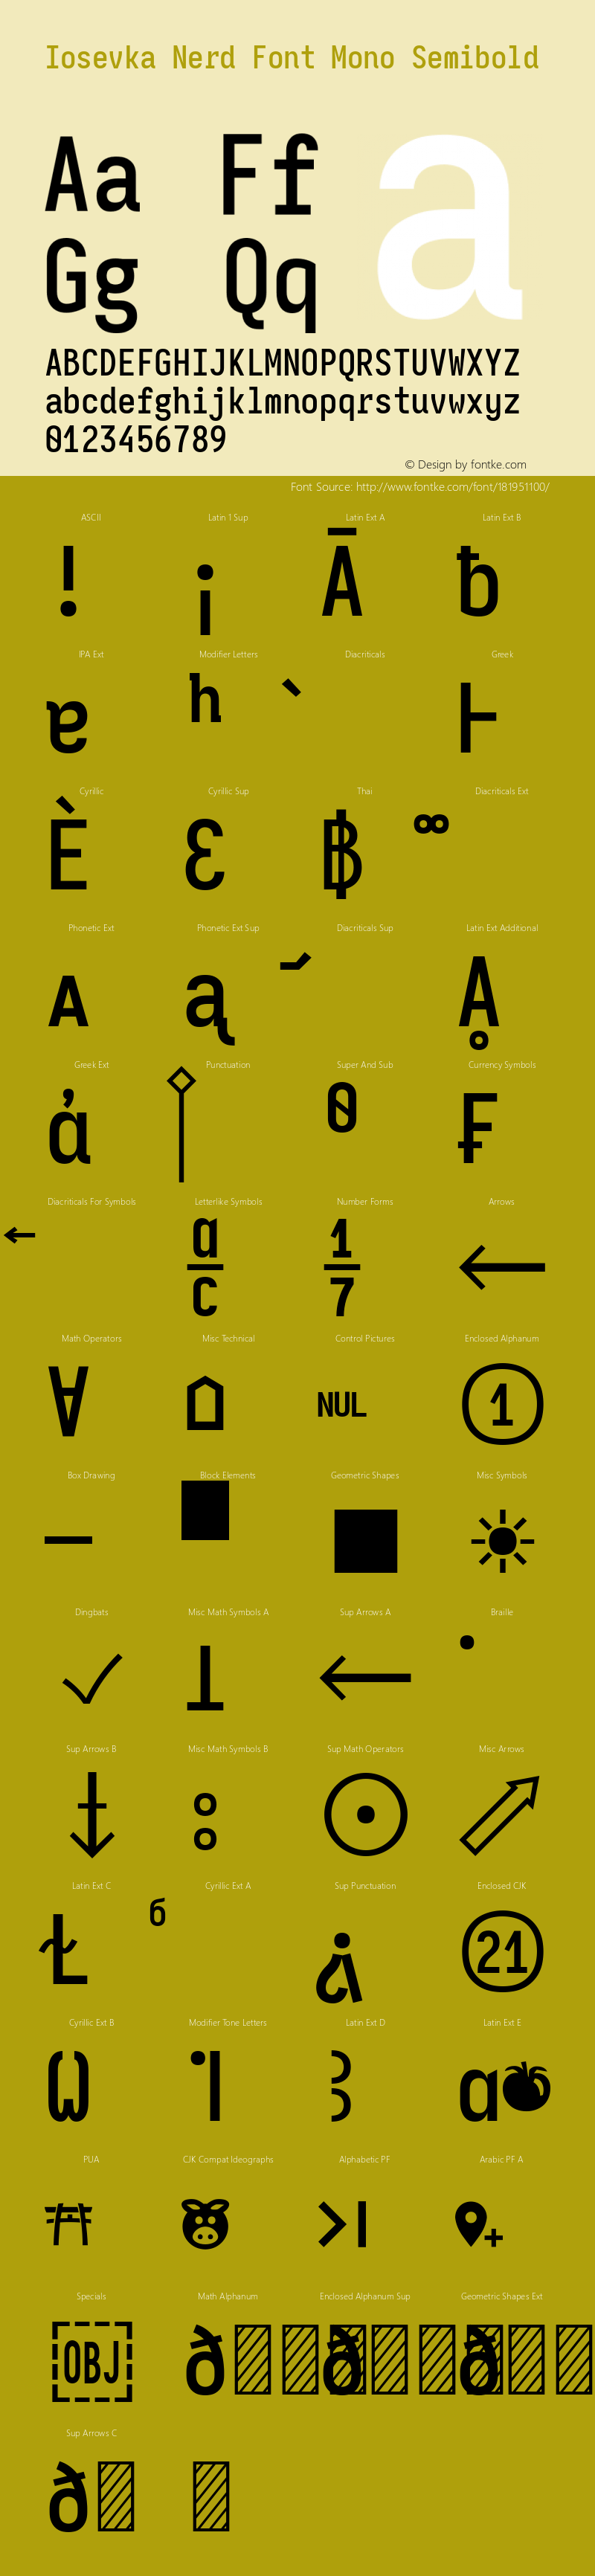 Iosevka Mayukai Monolite Semibold Nerd Font Complete Mono Version 10.3.4; ttfautohint (v1.8.4)图片样张